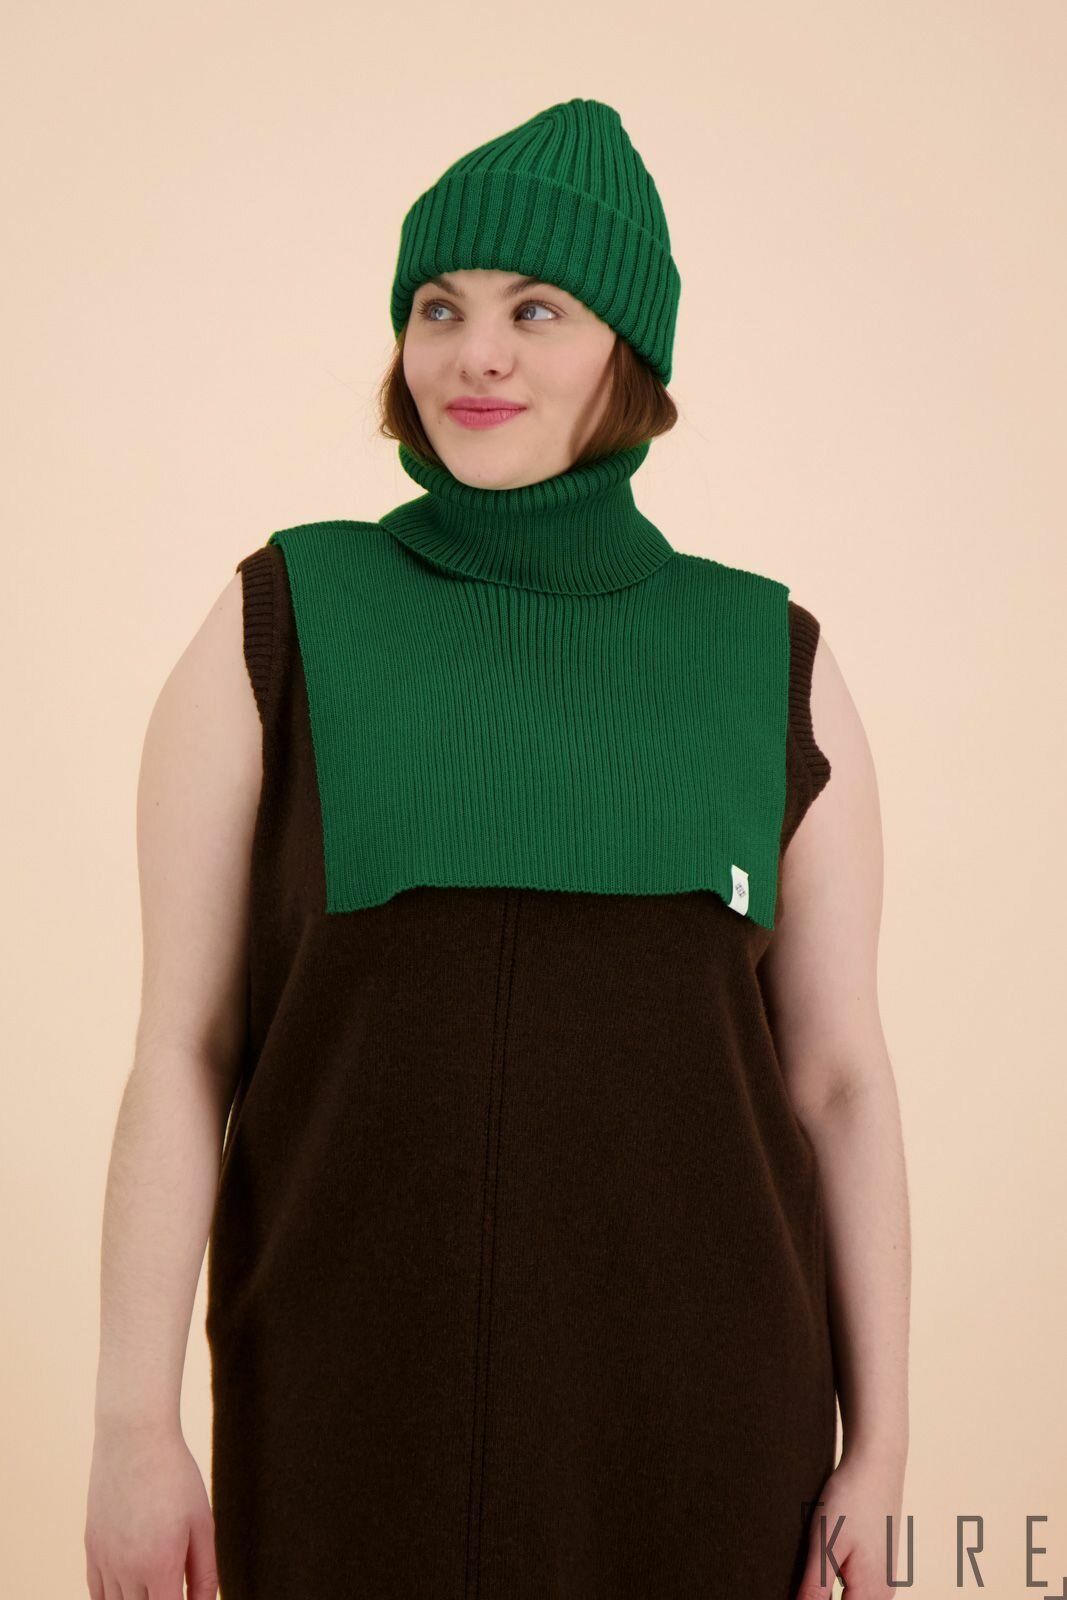 Kaiko Clothing Rib Merino Beanie, Bright Green | Beanies | Kure